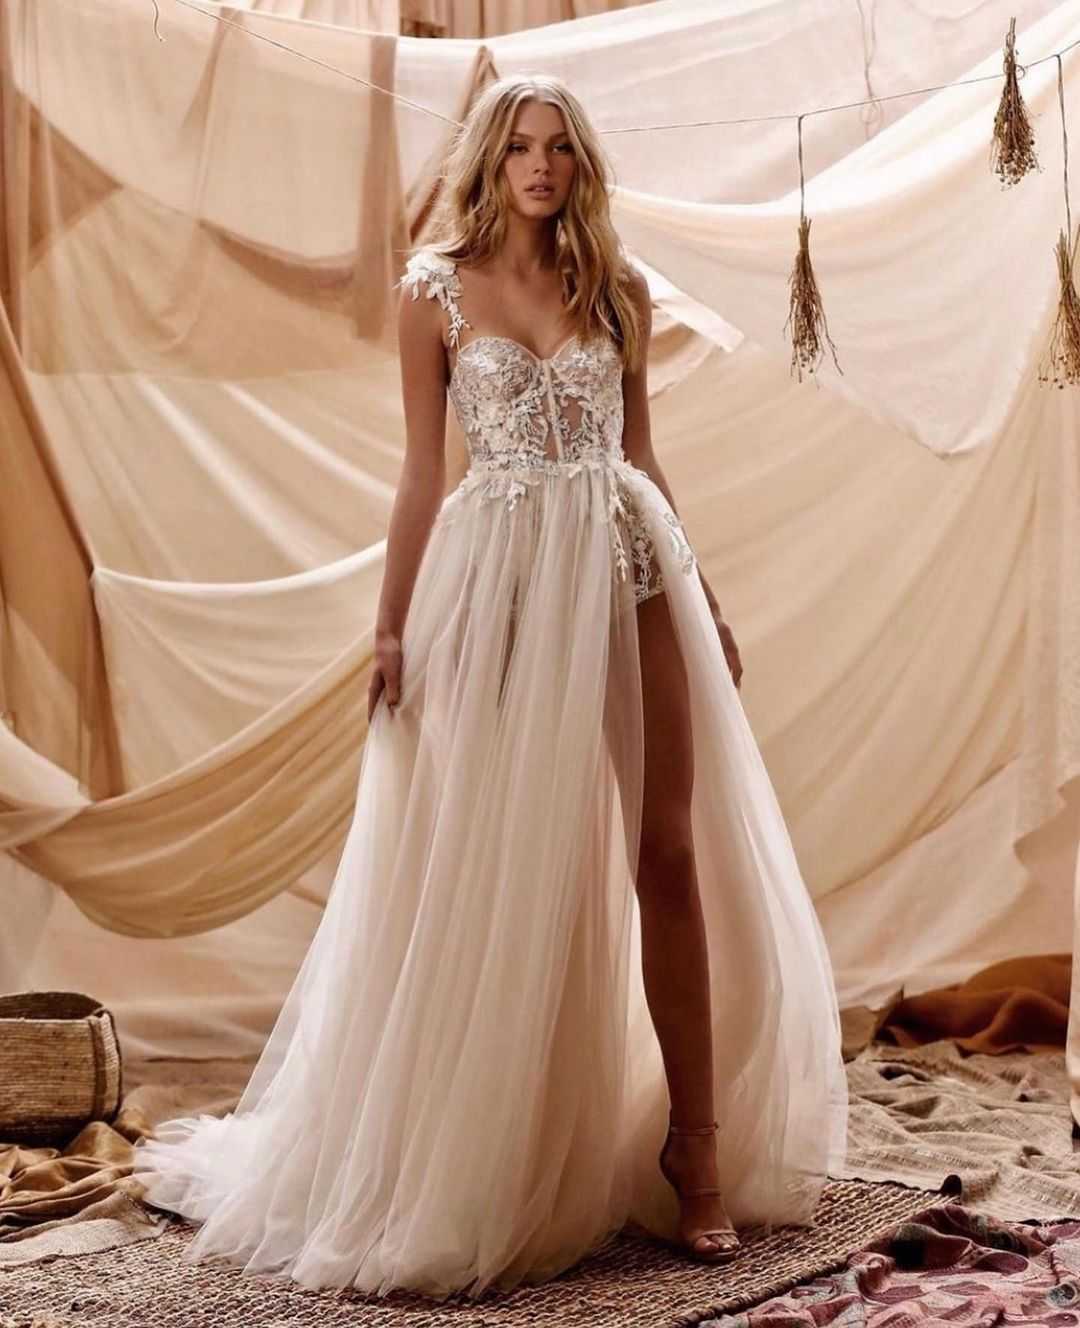 8 трендов свадебной моды 2020, о которых нужно знать каждой невесте